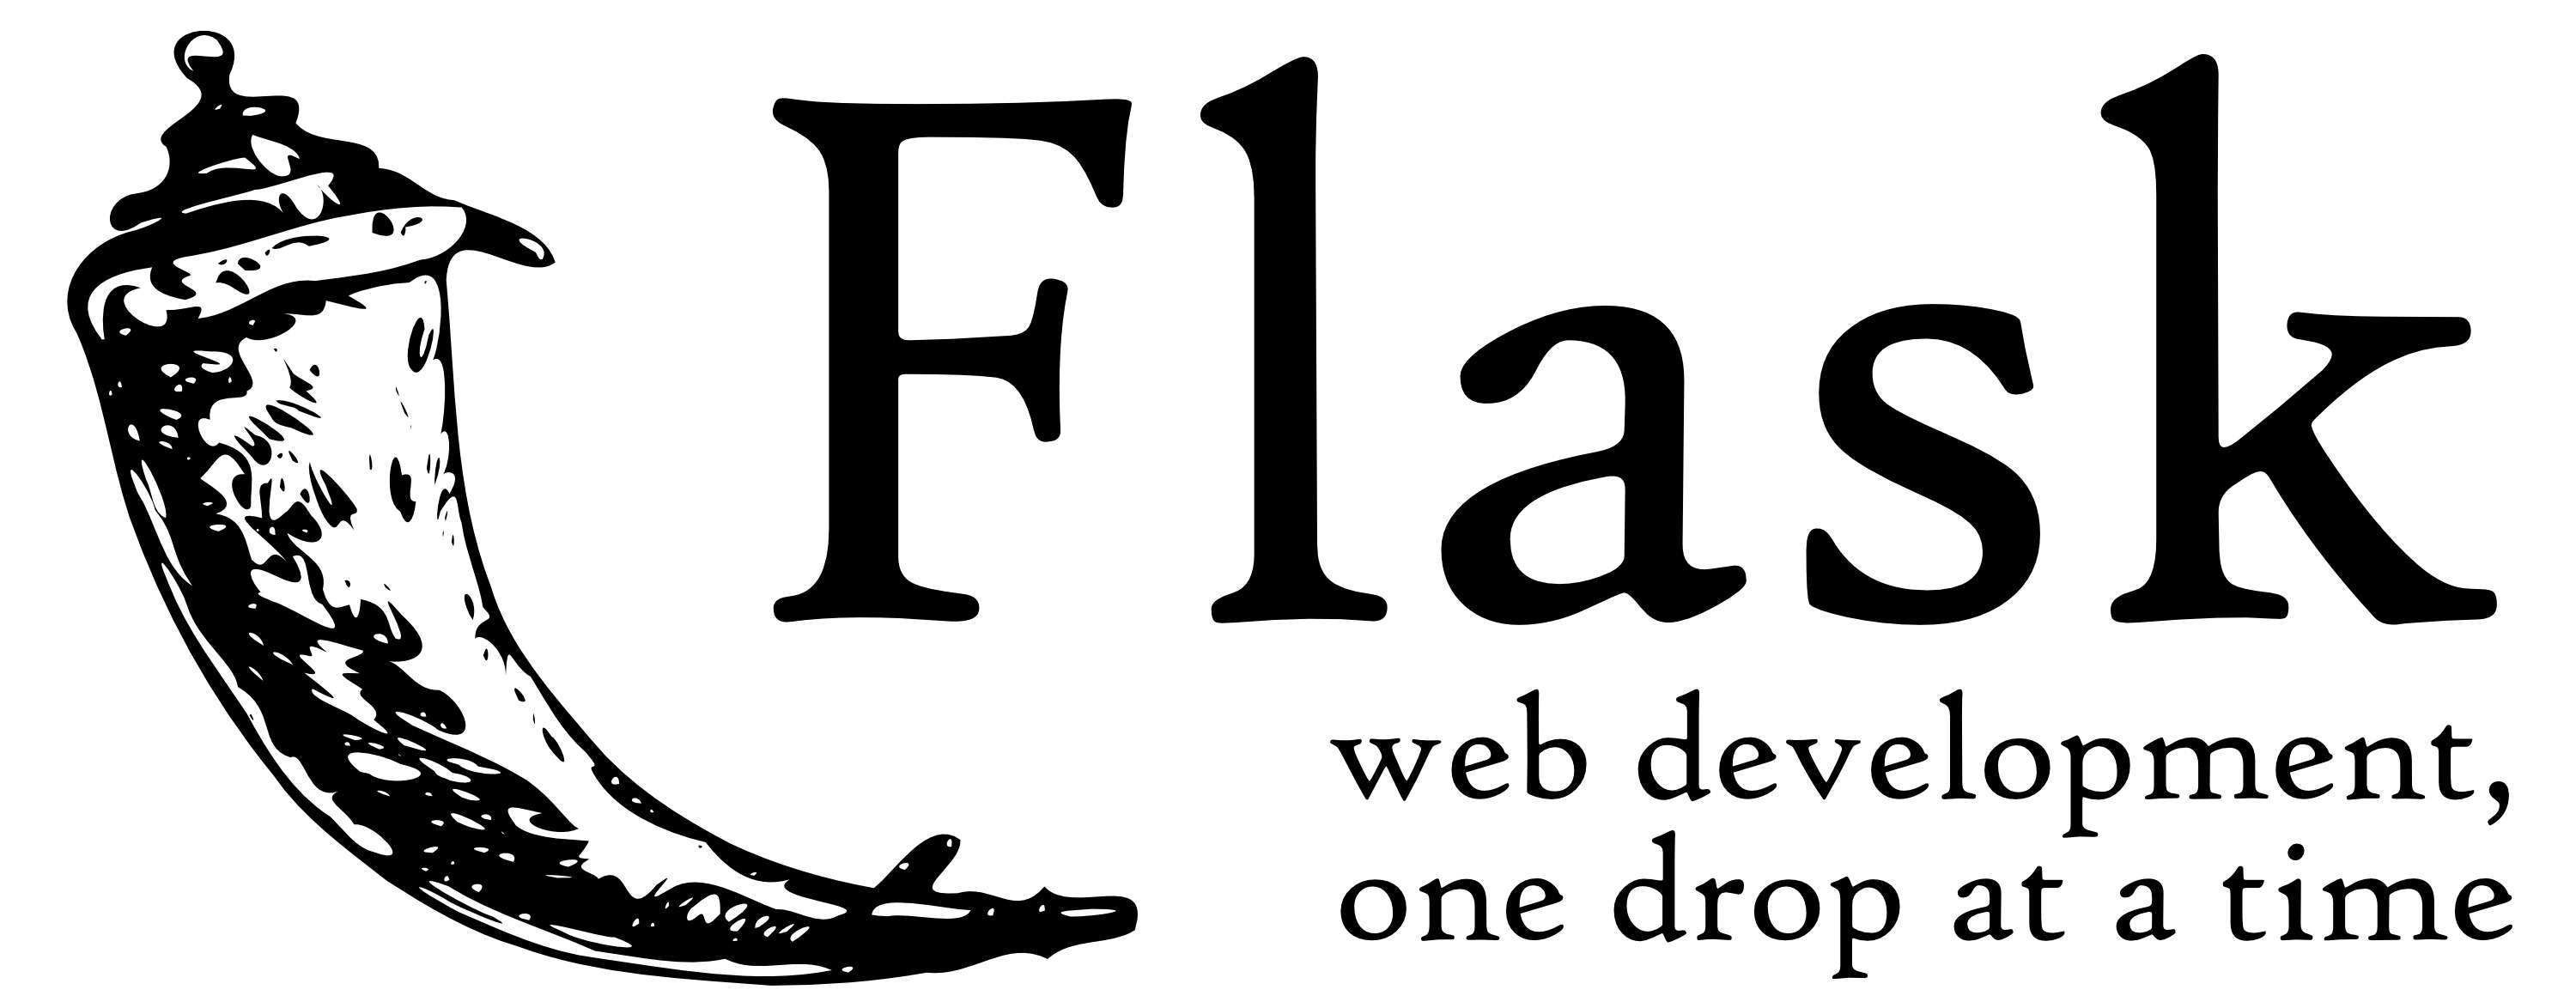 flask 定义和操作数据库